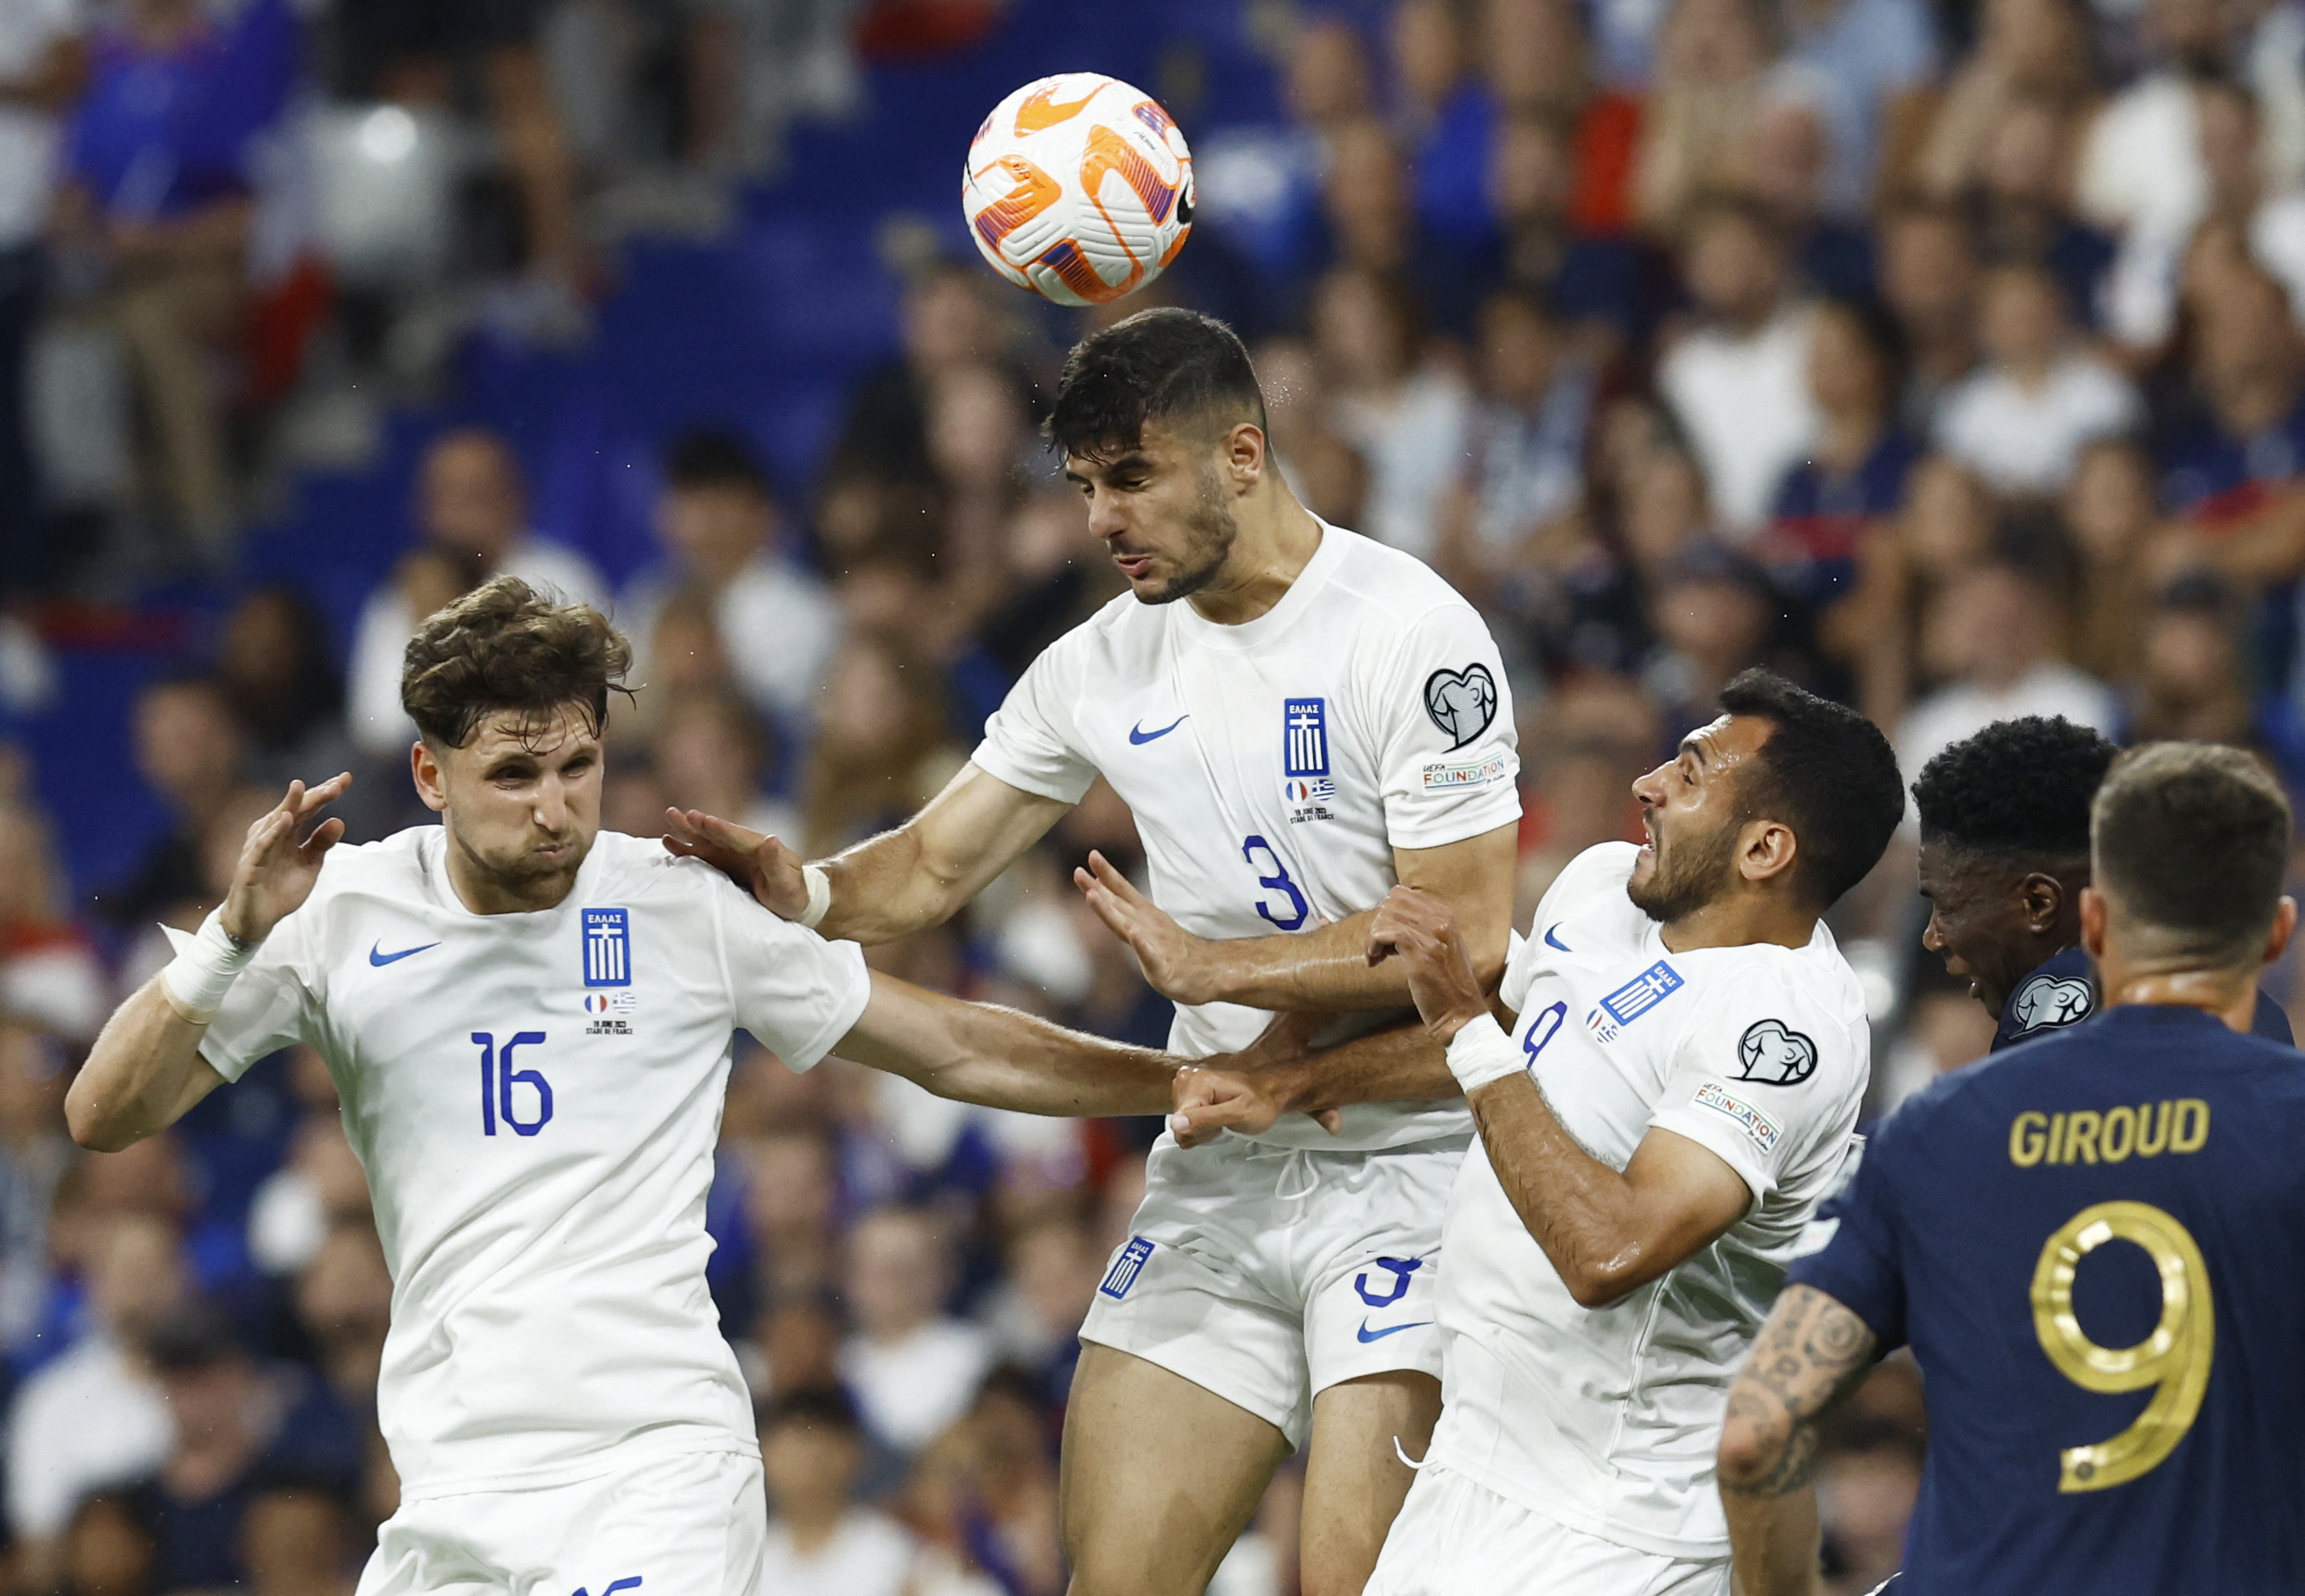 Γαλλία - Ελλάδα 1-0: Καλή εμφάνιση αλλά ήττα για την εθνική μας - ΤΟ ΒΗΜΑ